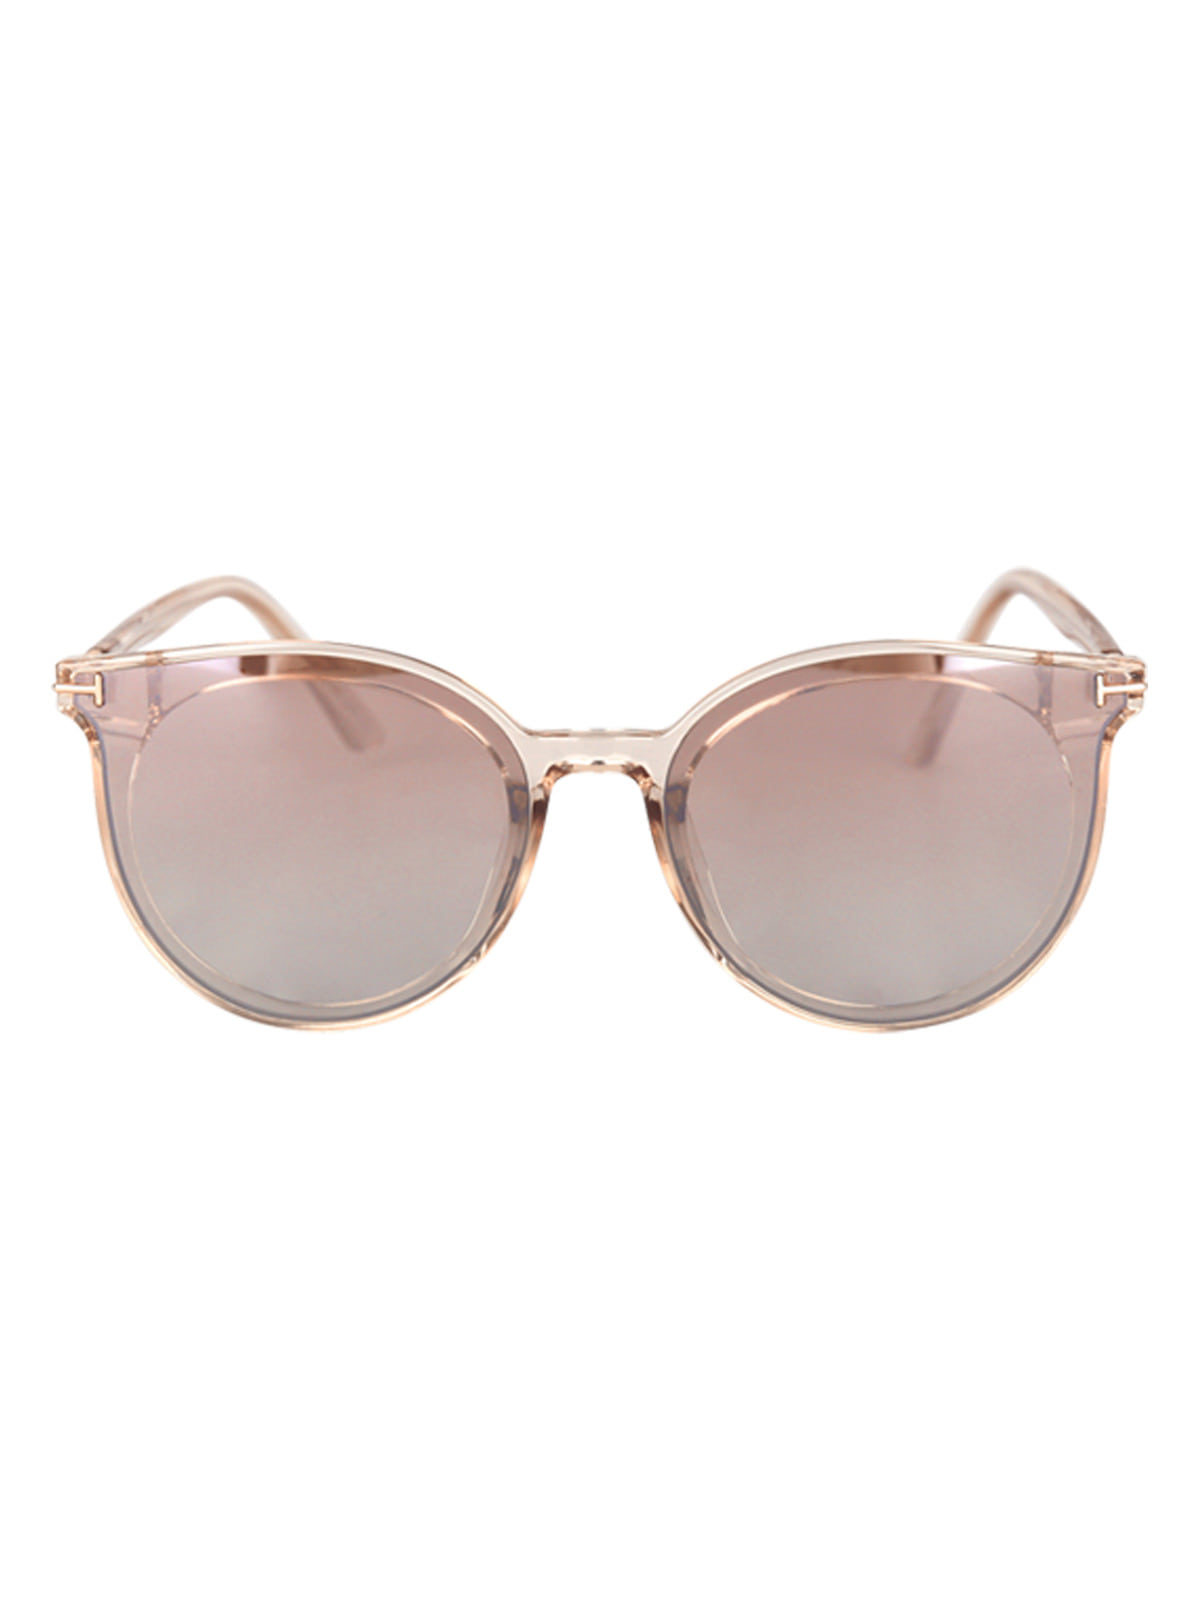 여성 선글라스 여름 뿔테 자외선 차단 아이웨어 LVI020